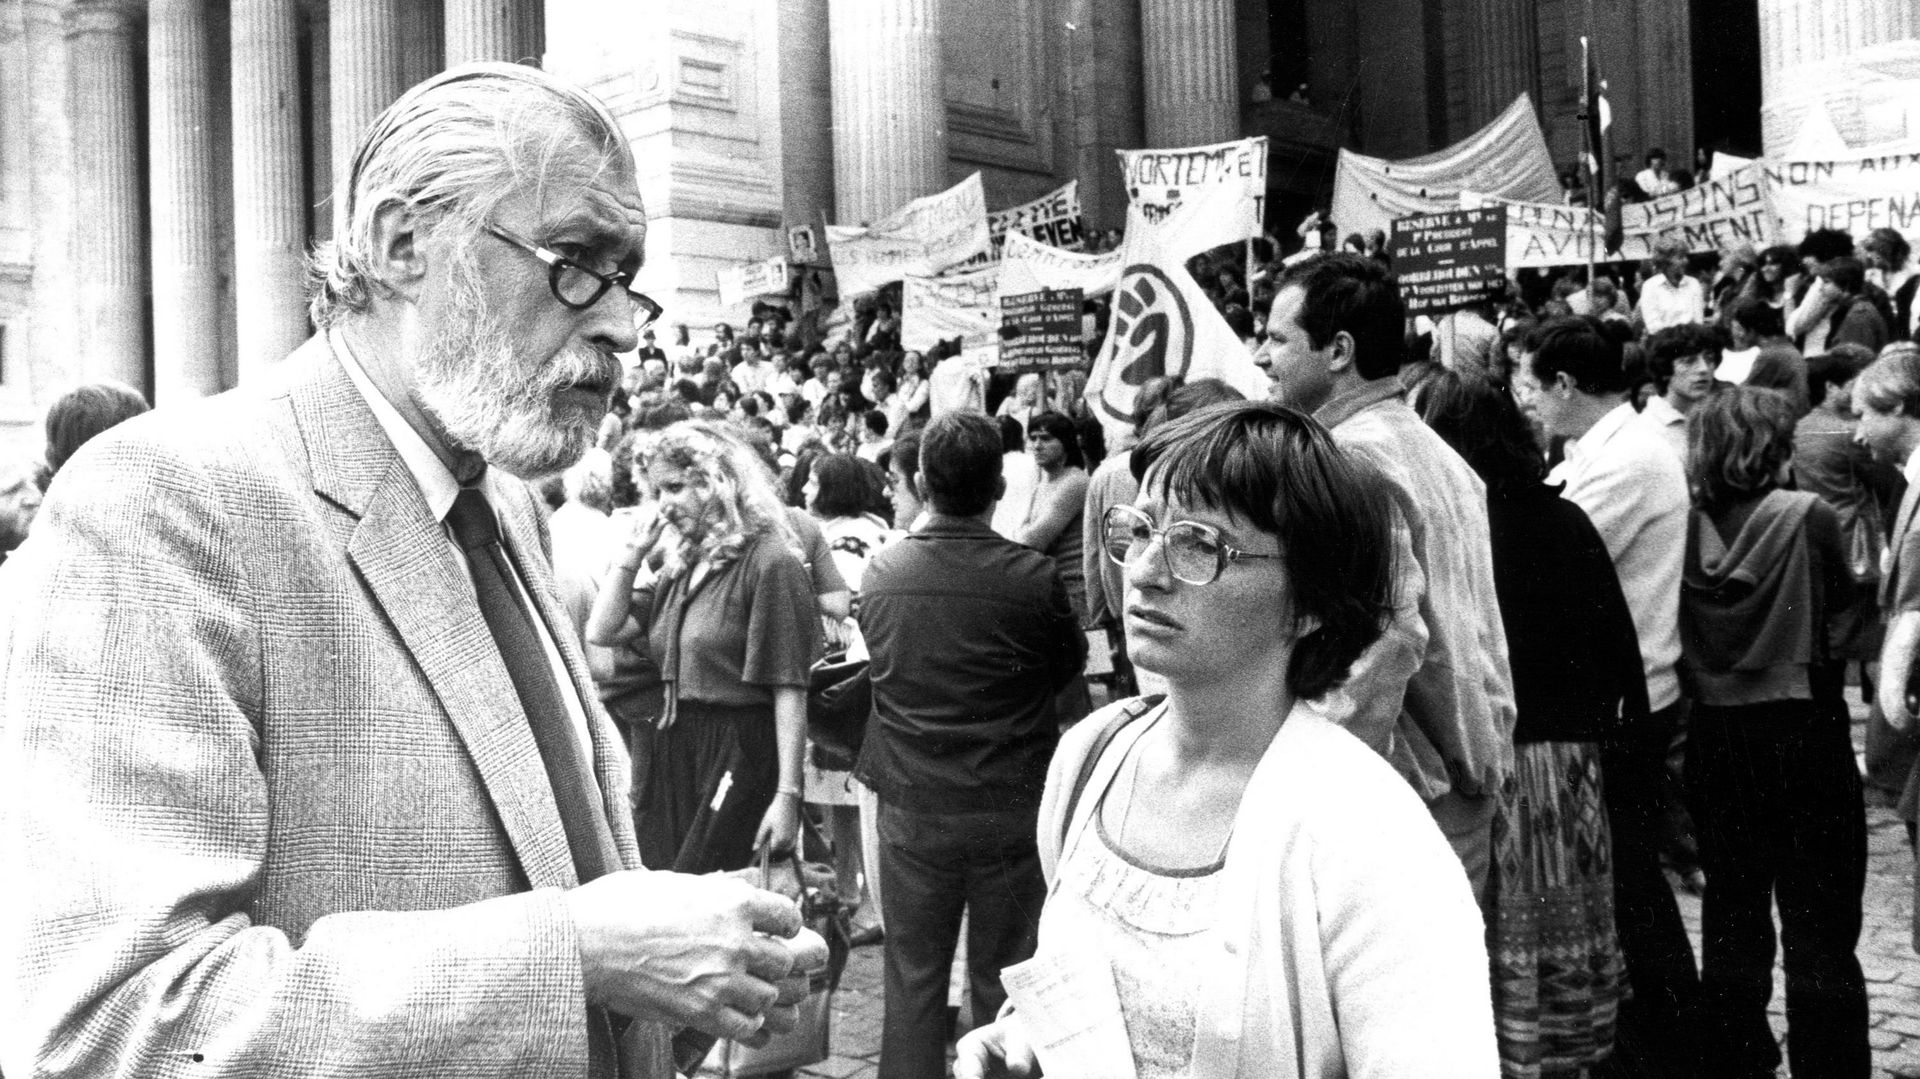 Le Dr Peers en 1981 devant le Palais de Justice de Bruxelles à l'occasion d'une manifestation liée à un procès pour avortement.